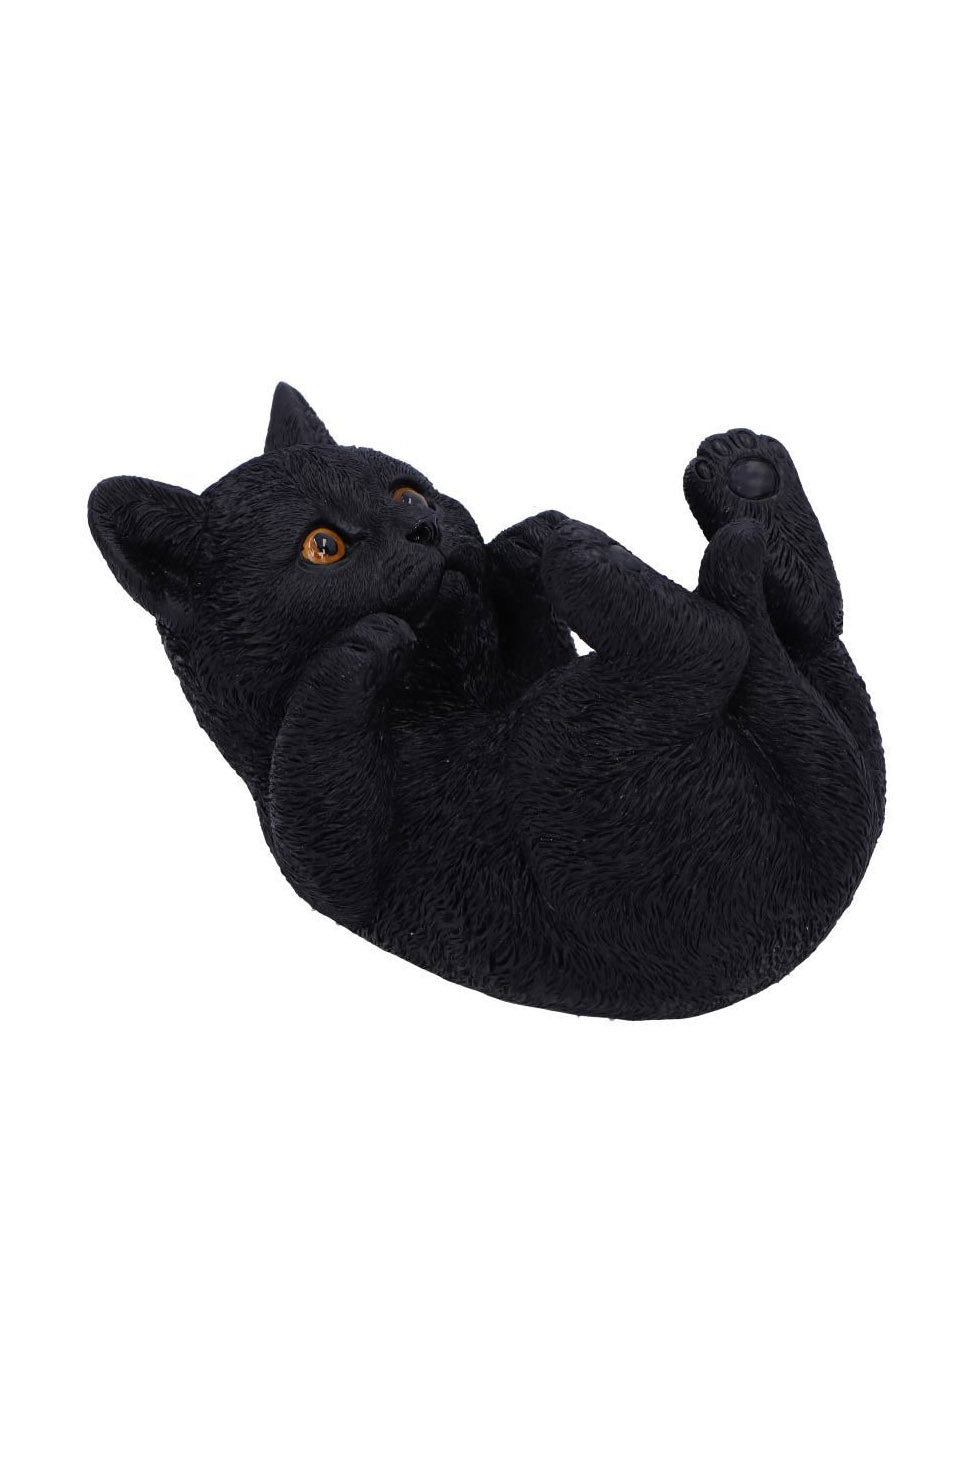 black cat gothic housewares